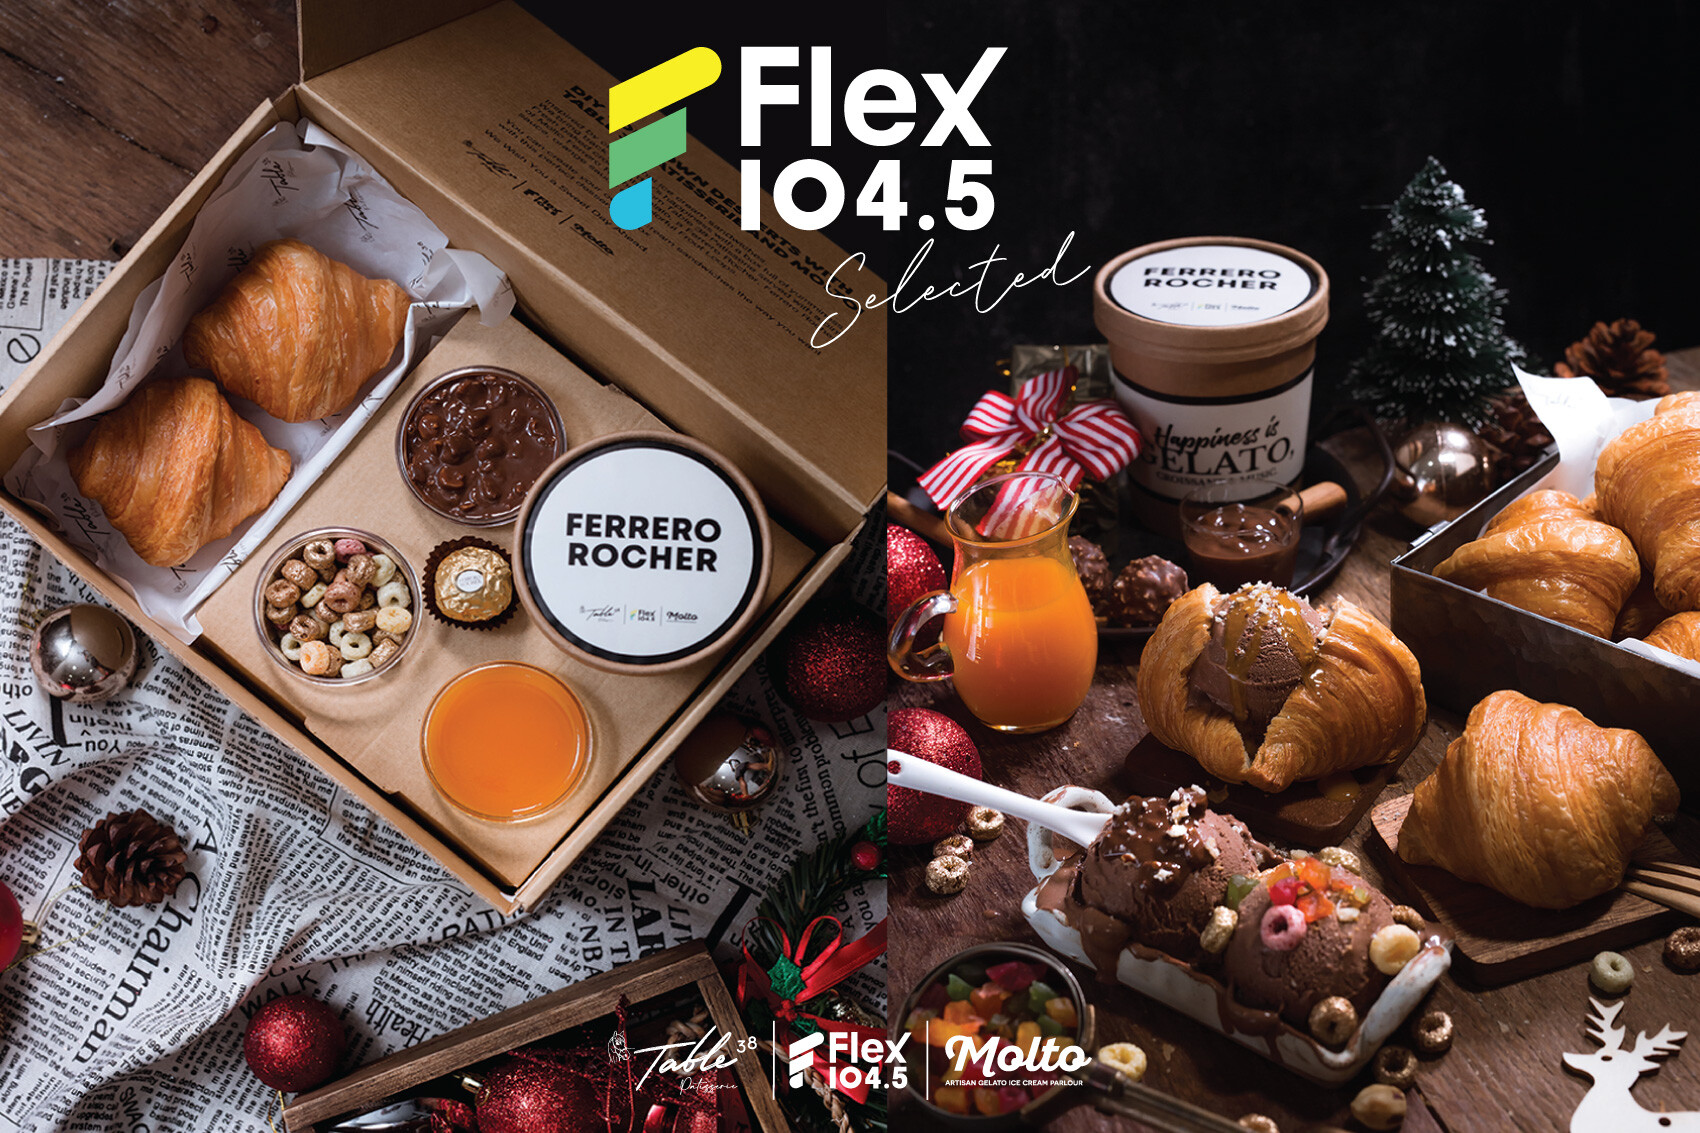 Flex 104.5 จัดใหญ่จับ "TABLE 38 Patisserie" ครัวซองต์ระดับมิชลินสตาร์เสิร์ฟกับ "Molto" ไอศกรีมระดับพรีเมียมพร้อมส่งตรงถึงบ้าน!